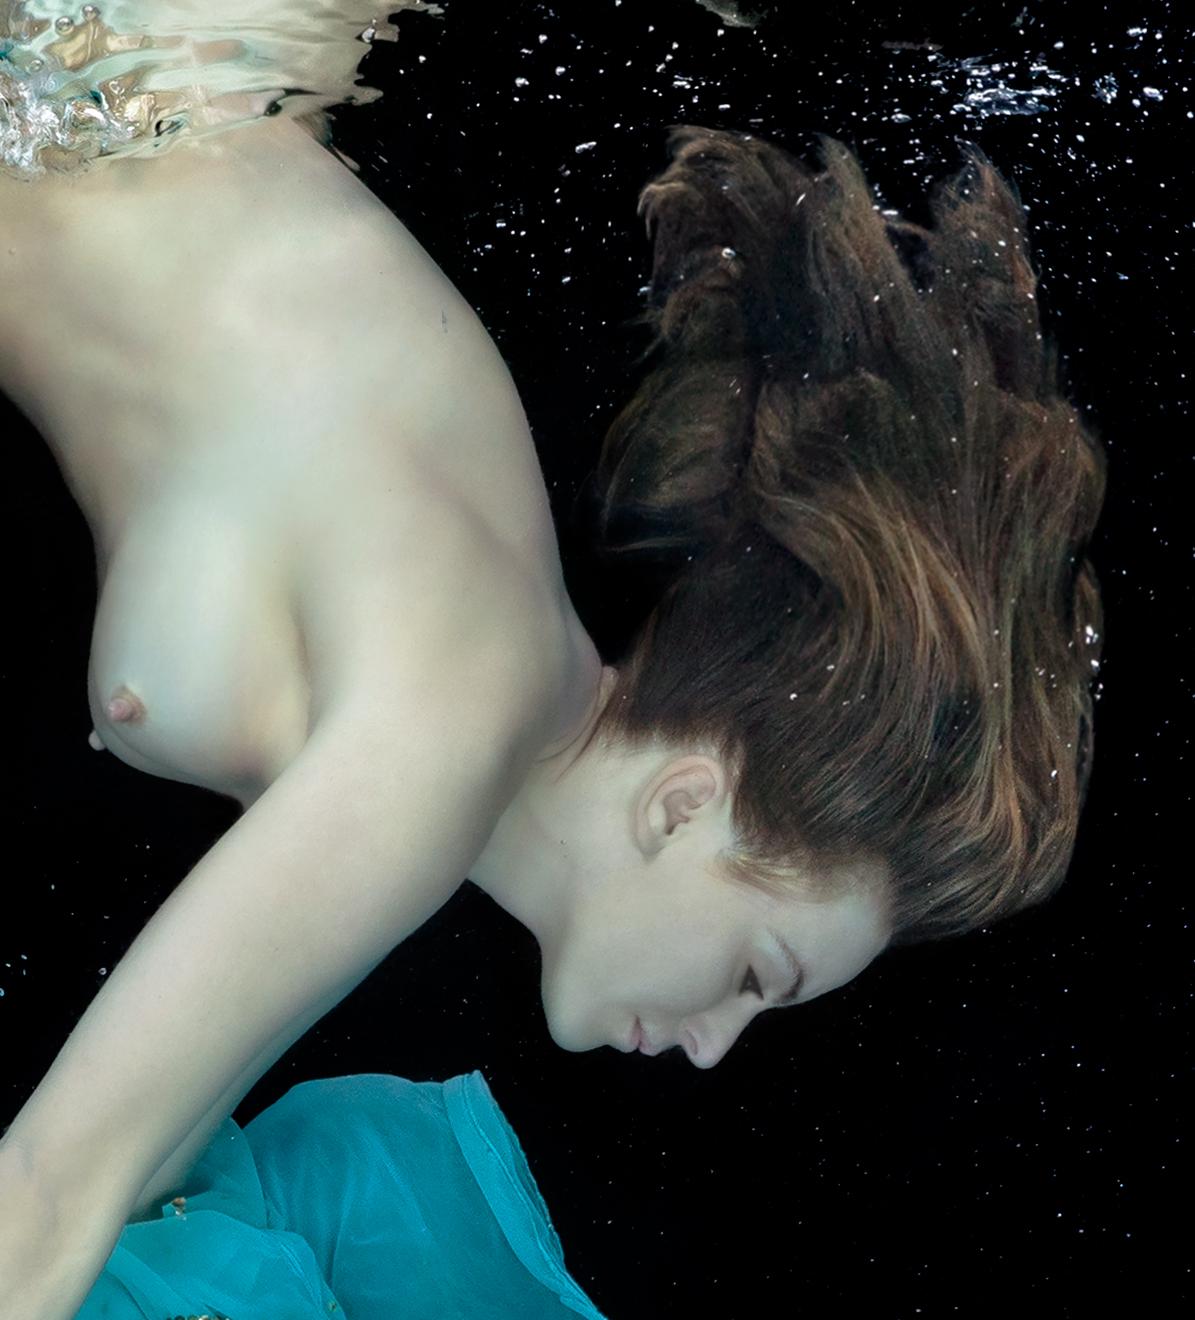 Une photographie sous-marine d'une jeune femme nue plongeant à côté de la robe turquoise brillante qu'elle vient d'enlever. 

Impression originale de qualité galerie signée par l'artiste. 
Impression numérique à pigments d'archives. 
Format du